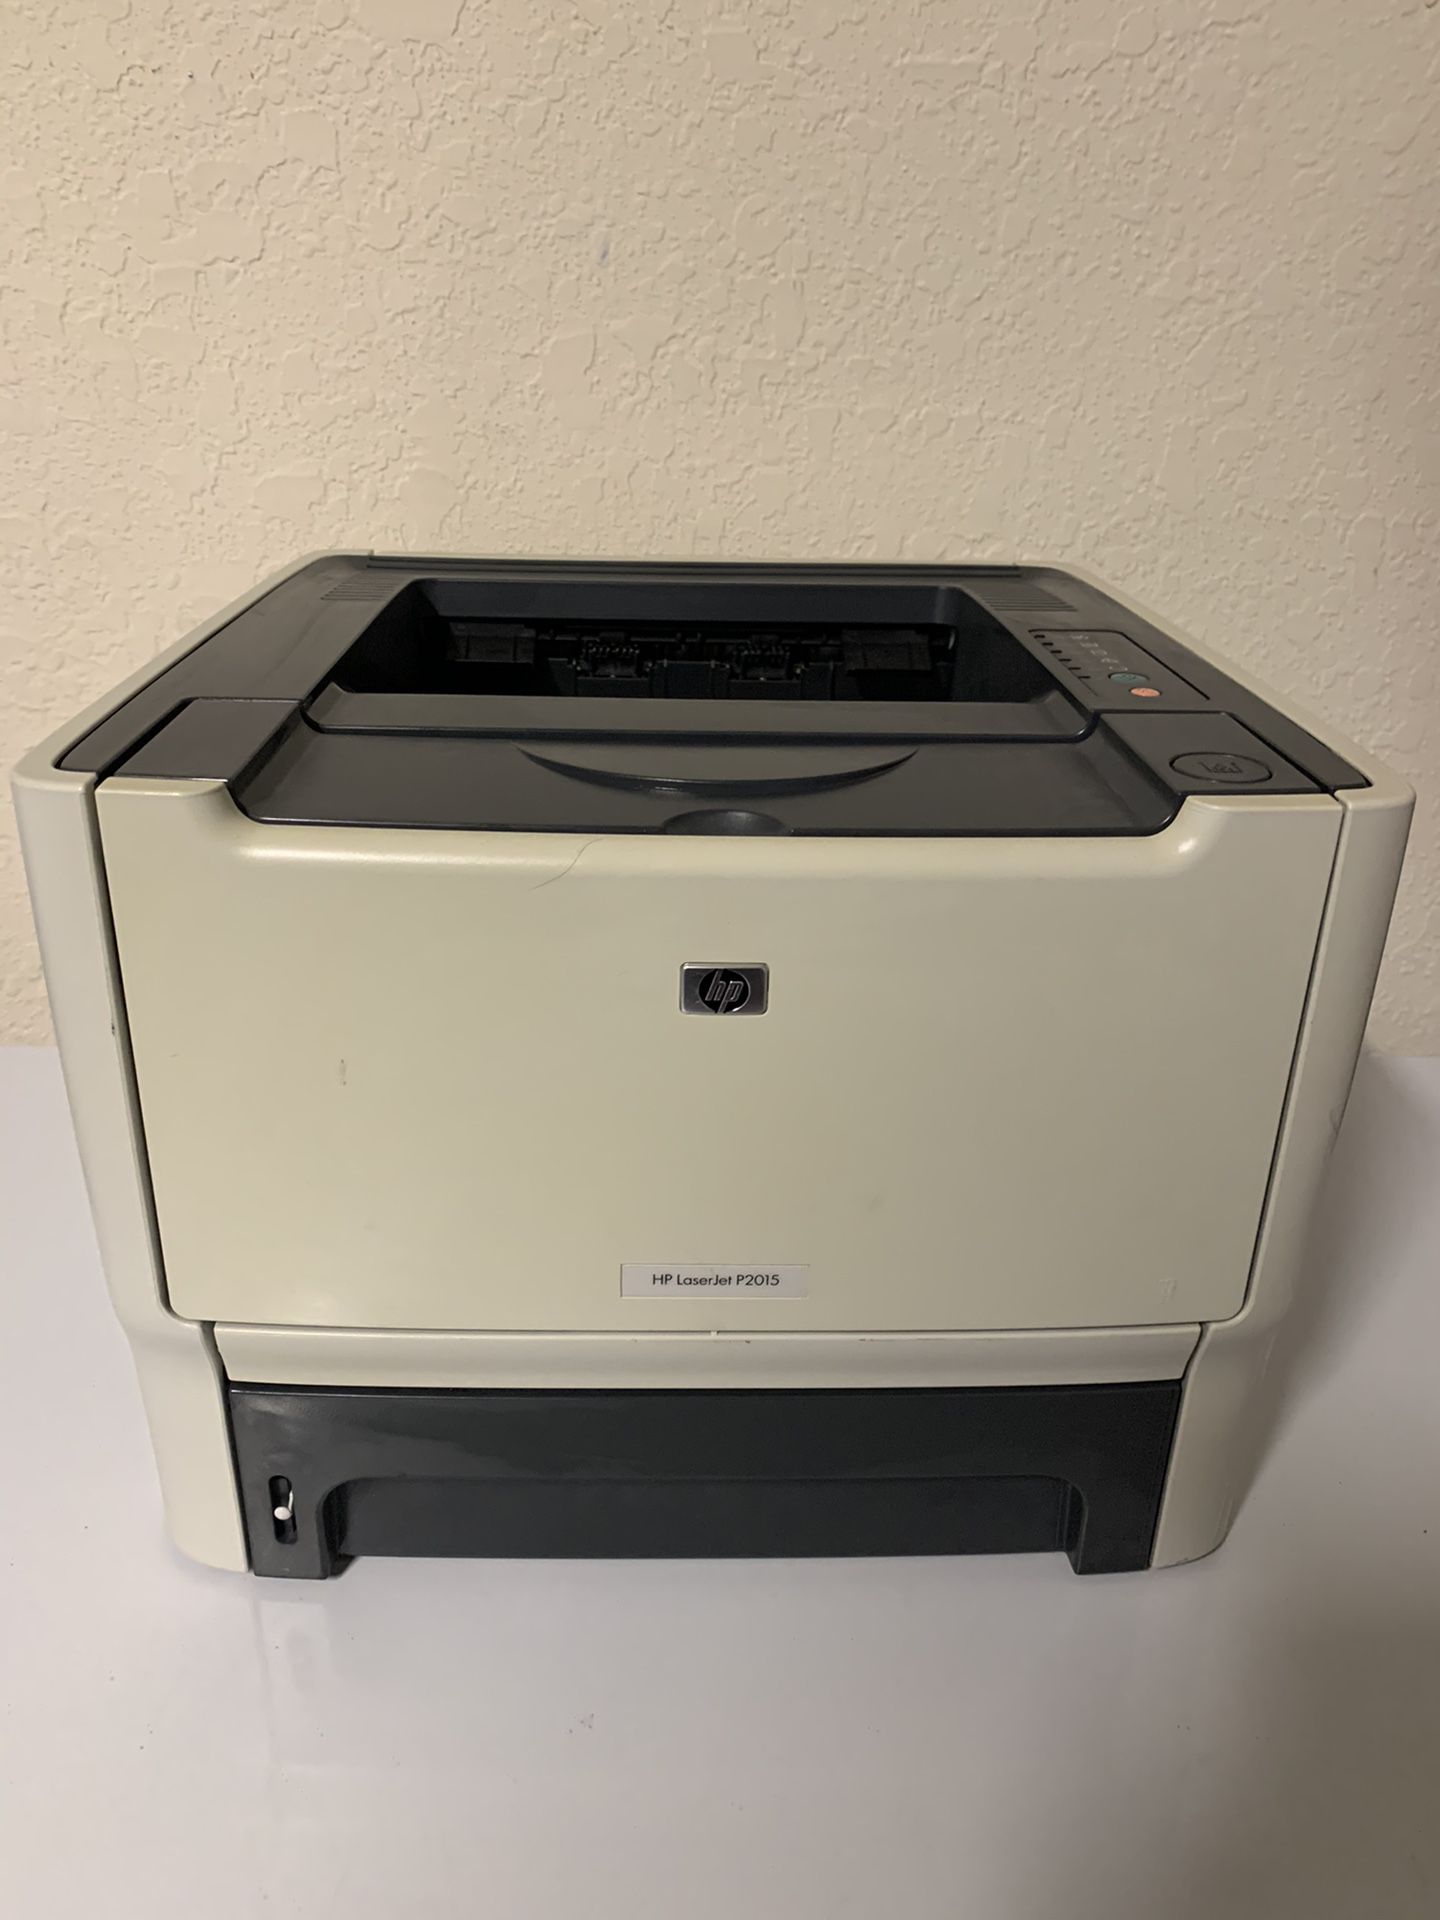 HP LaserJet P2015d Workgroup Monochrome Printer